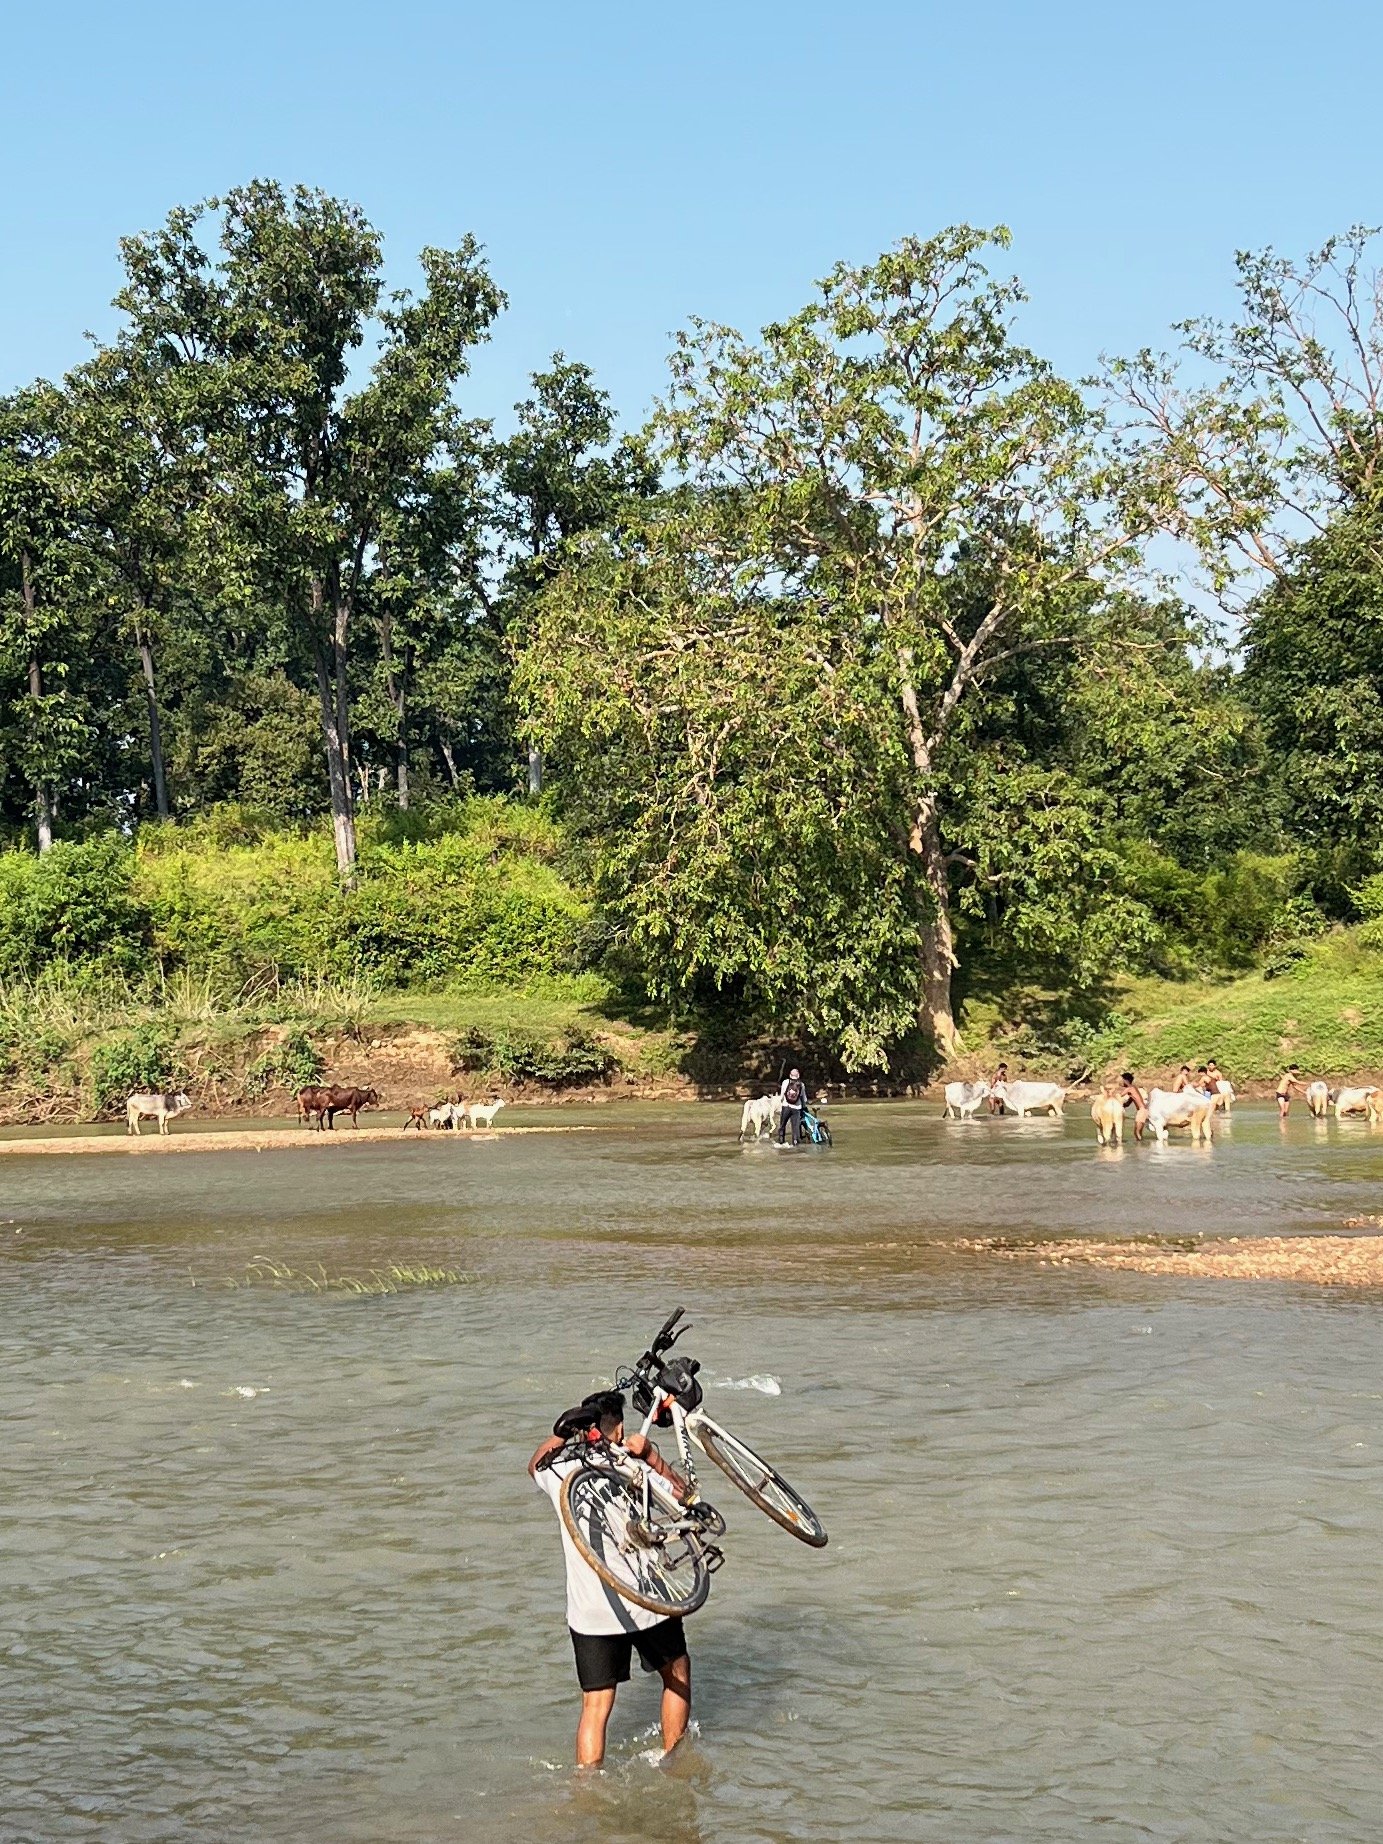 Ishan carrying cycle over Banjaar.jpeg